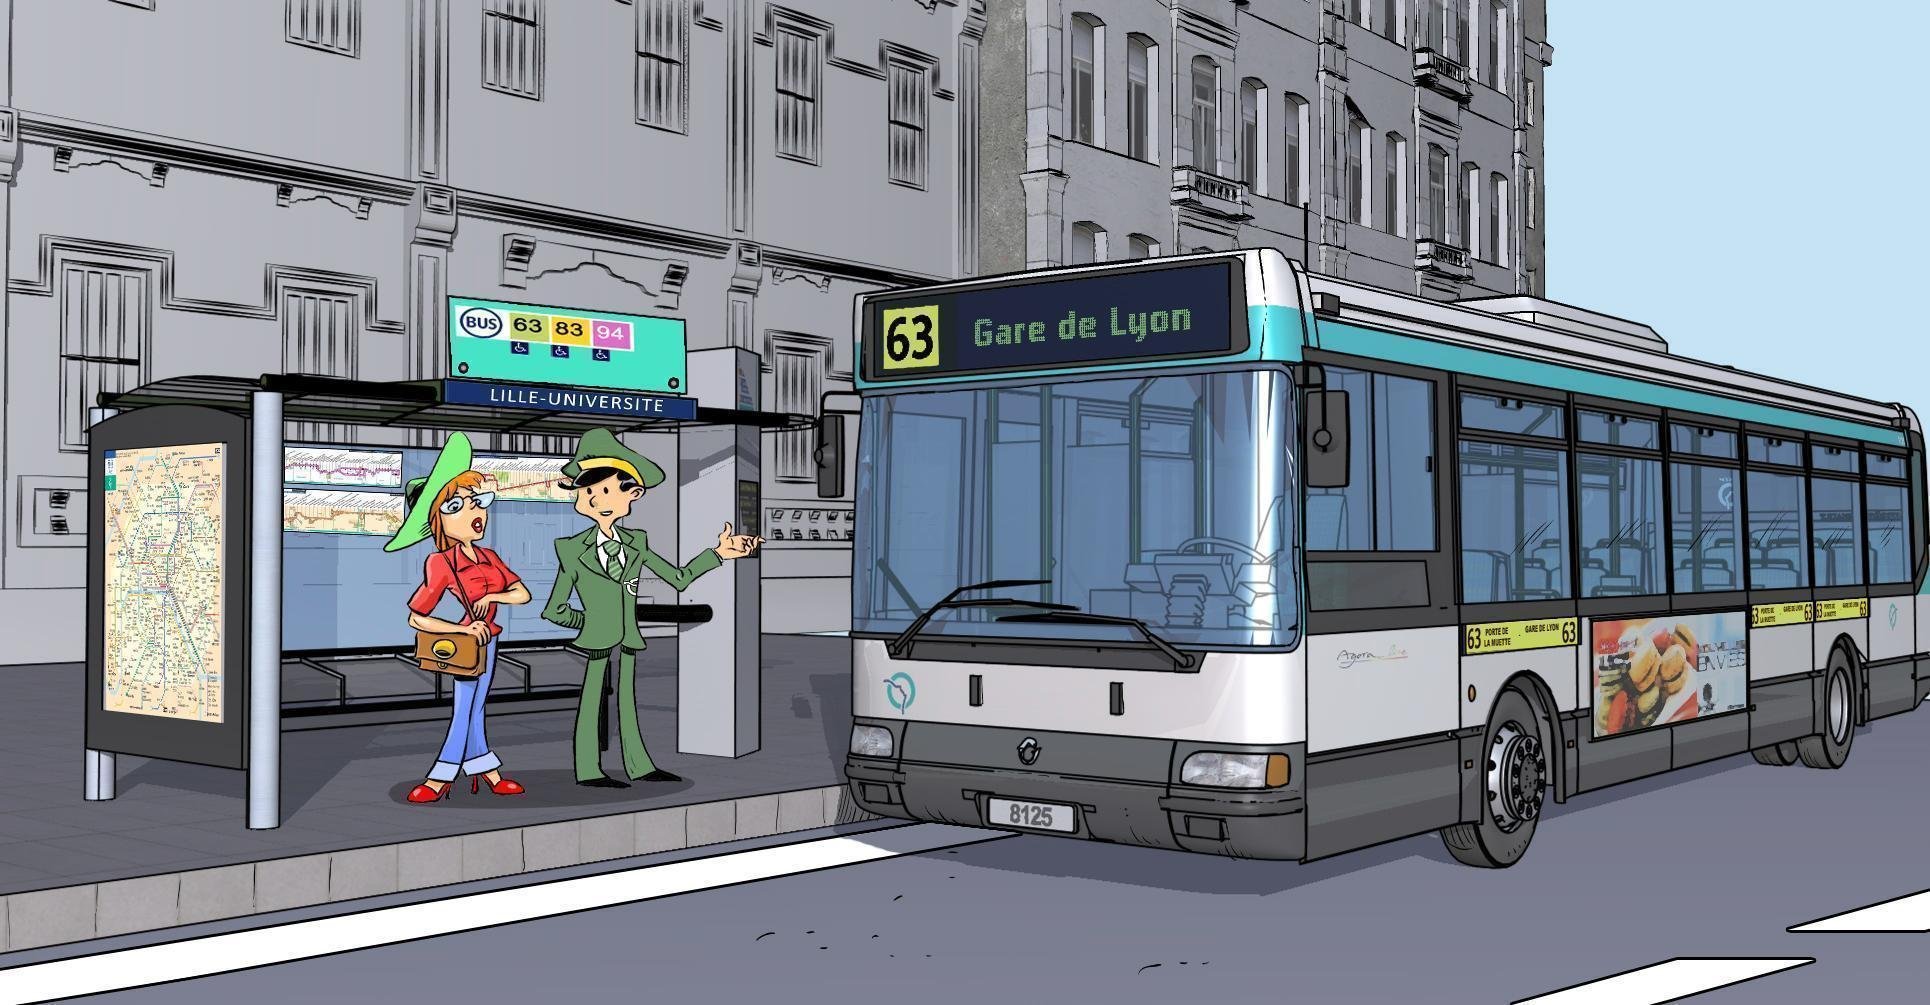 Ост общественного транспорта. Остановка общественного транспорта. Остановка общественном транспорте иллюстрации. Автобусная остановка иллюстрация. Остановка общественного транспорта рисунок.